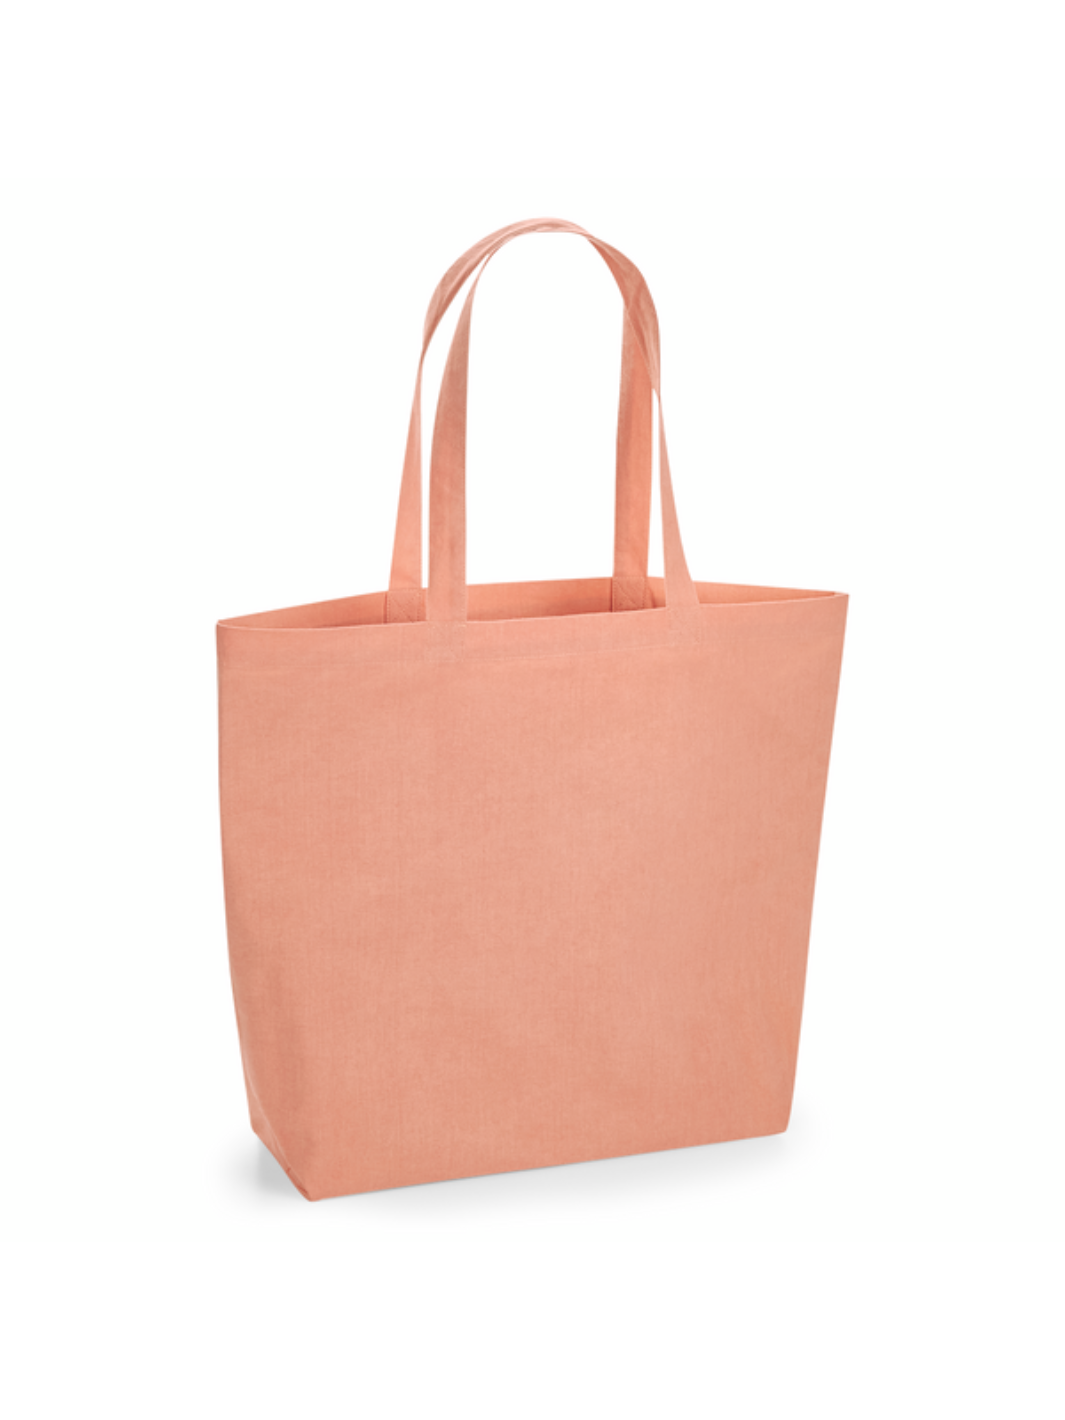 Odolná skládací nákupní taška ze 100% bio bavlny - růžová